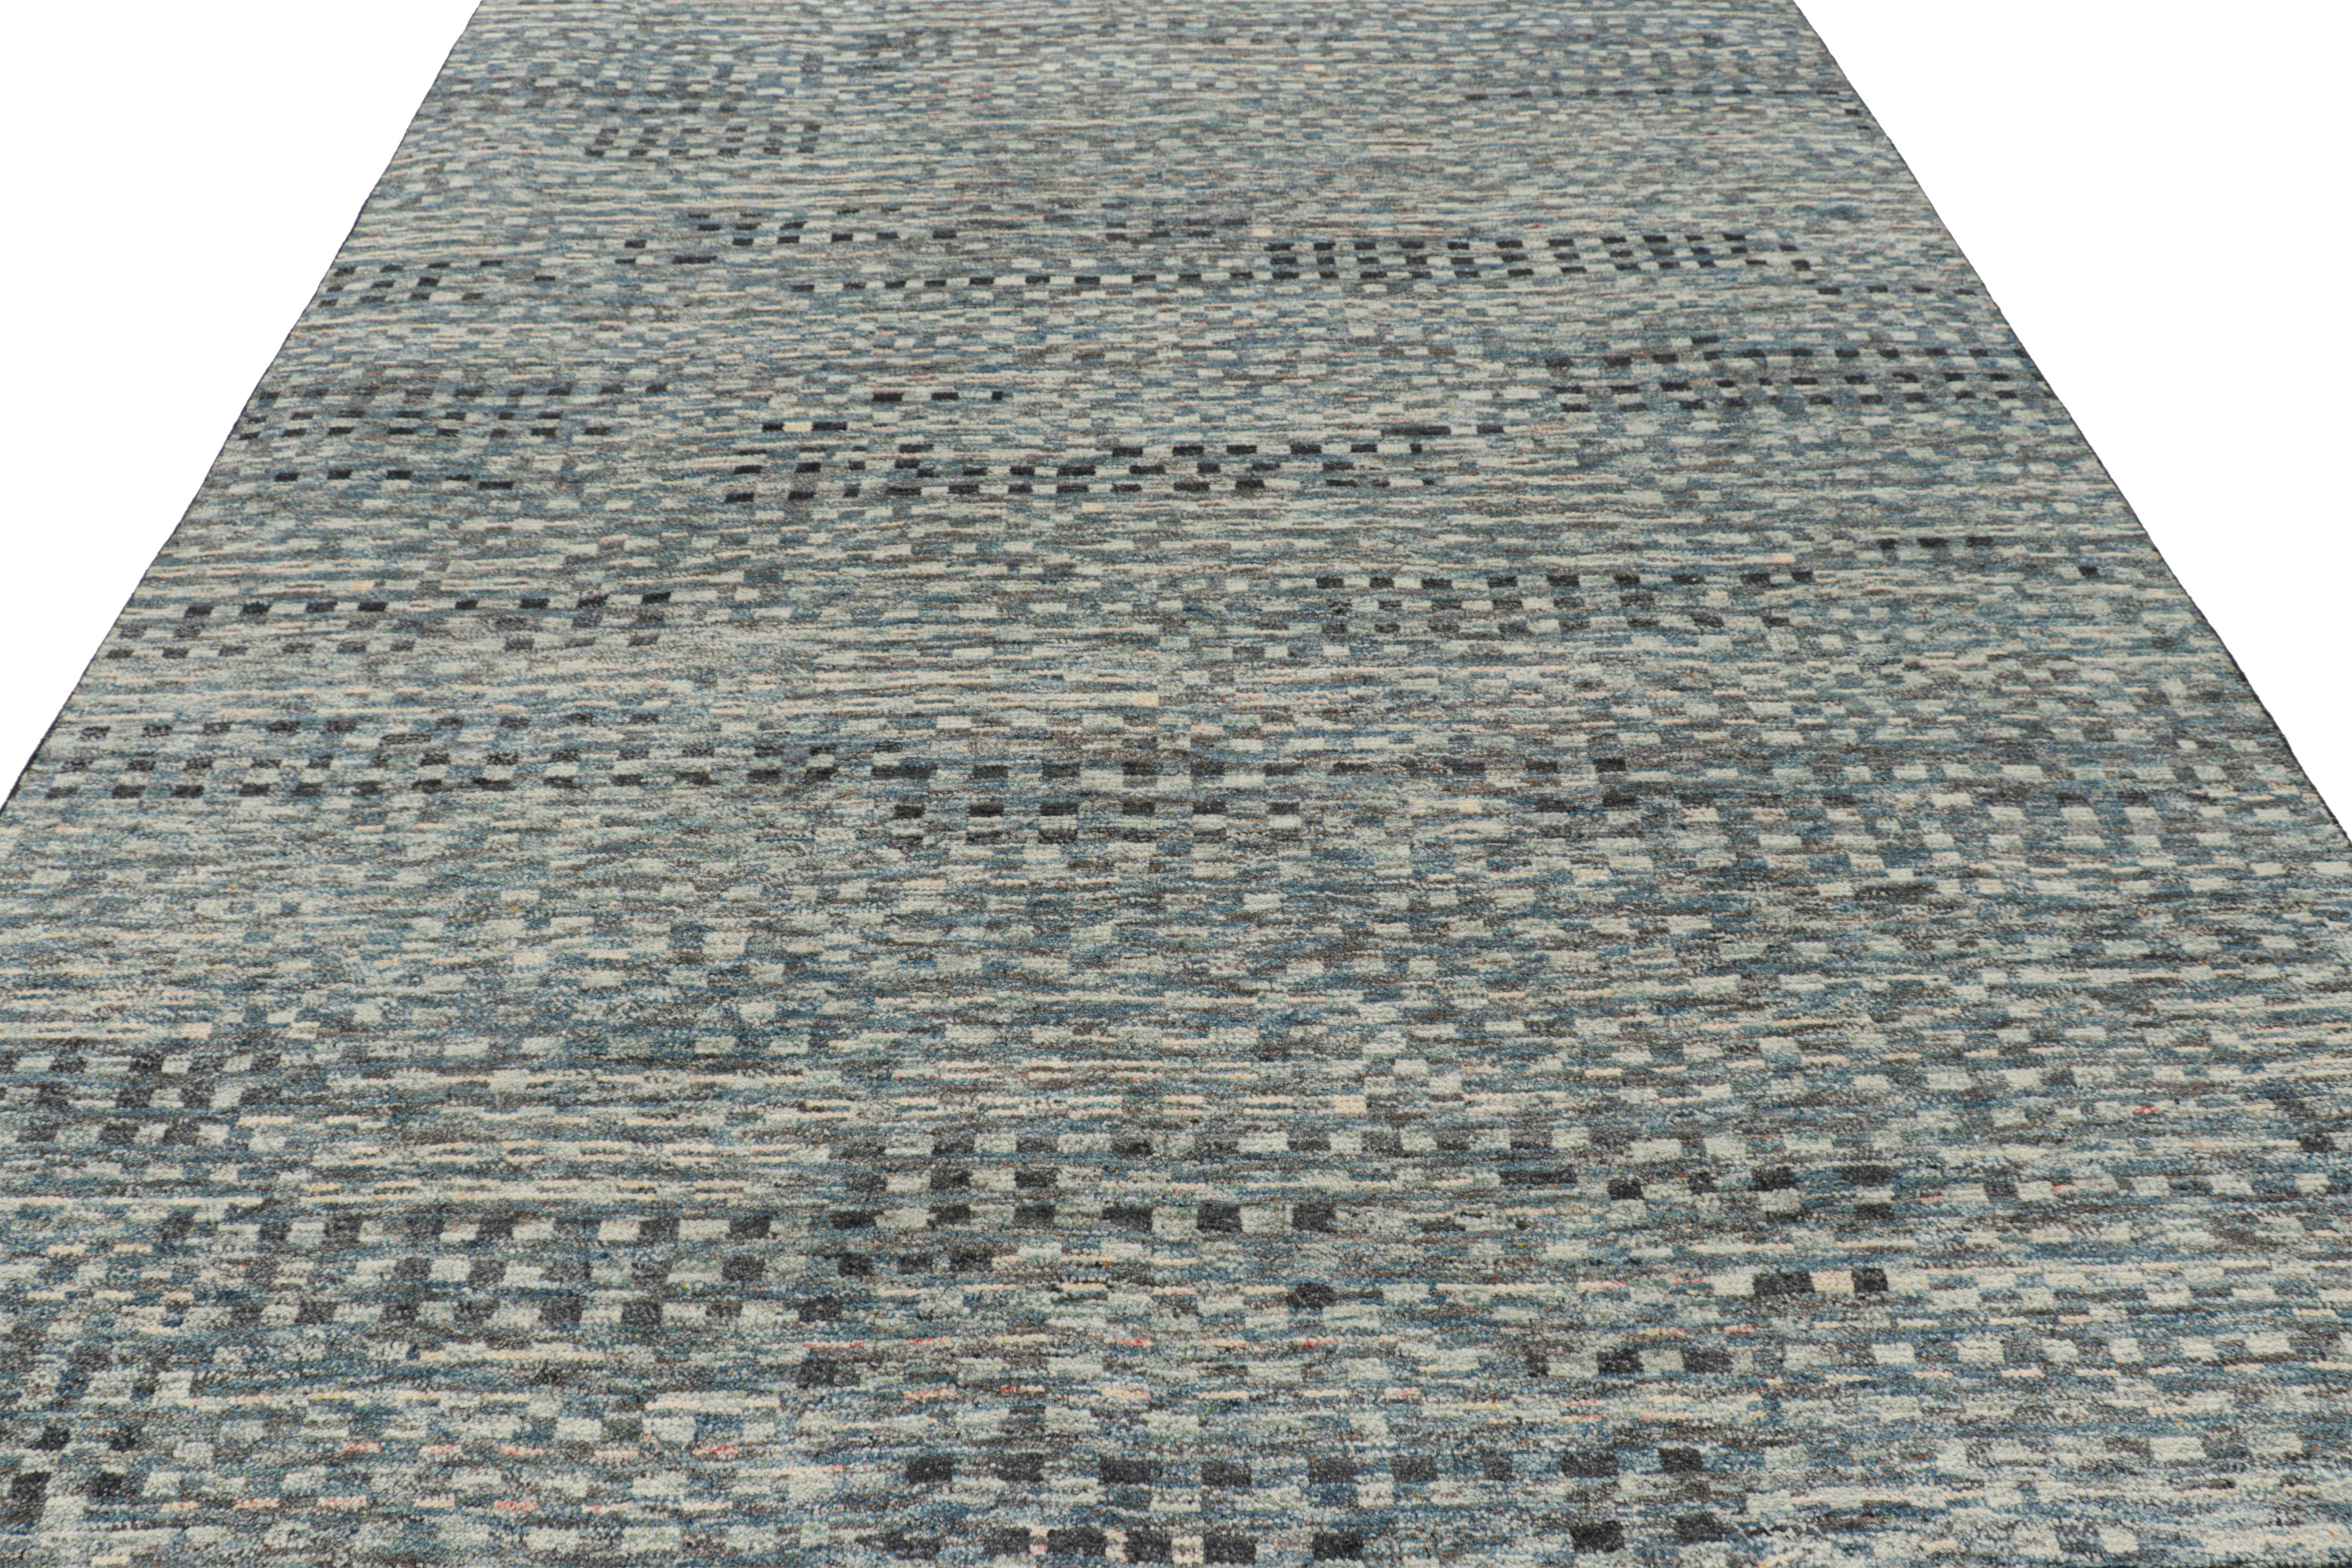 Rug & Kilim's Marokkanischer Teppich in Blau, Grau und Weiß mit geometrischen Mustern (Handgeknüpft) im Angebot